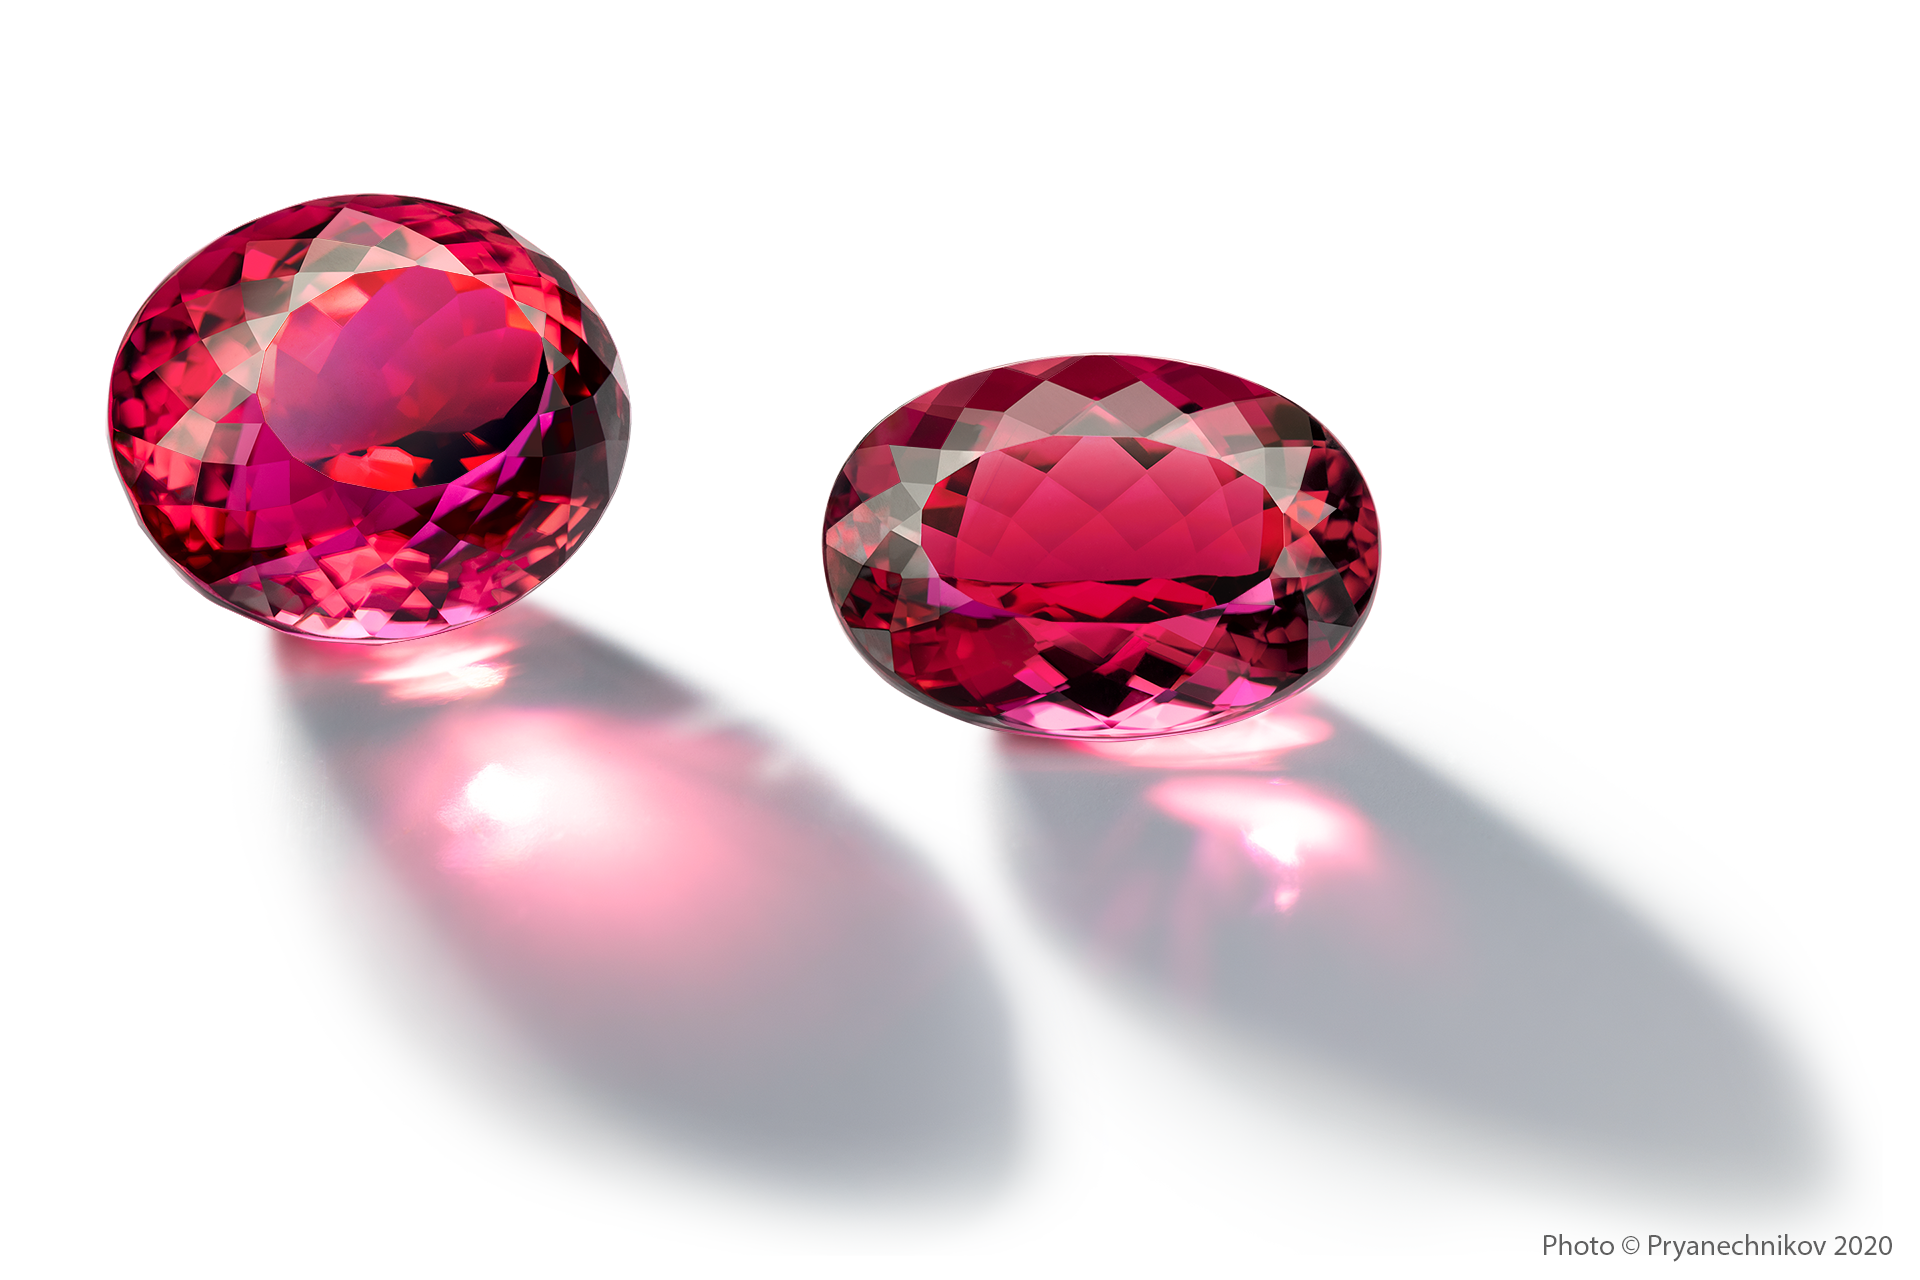 Рекламное фото ювелирных изделий и драгоценных камней. Precious Gems